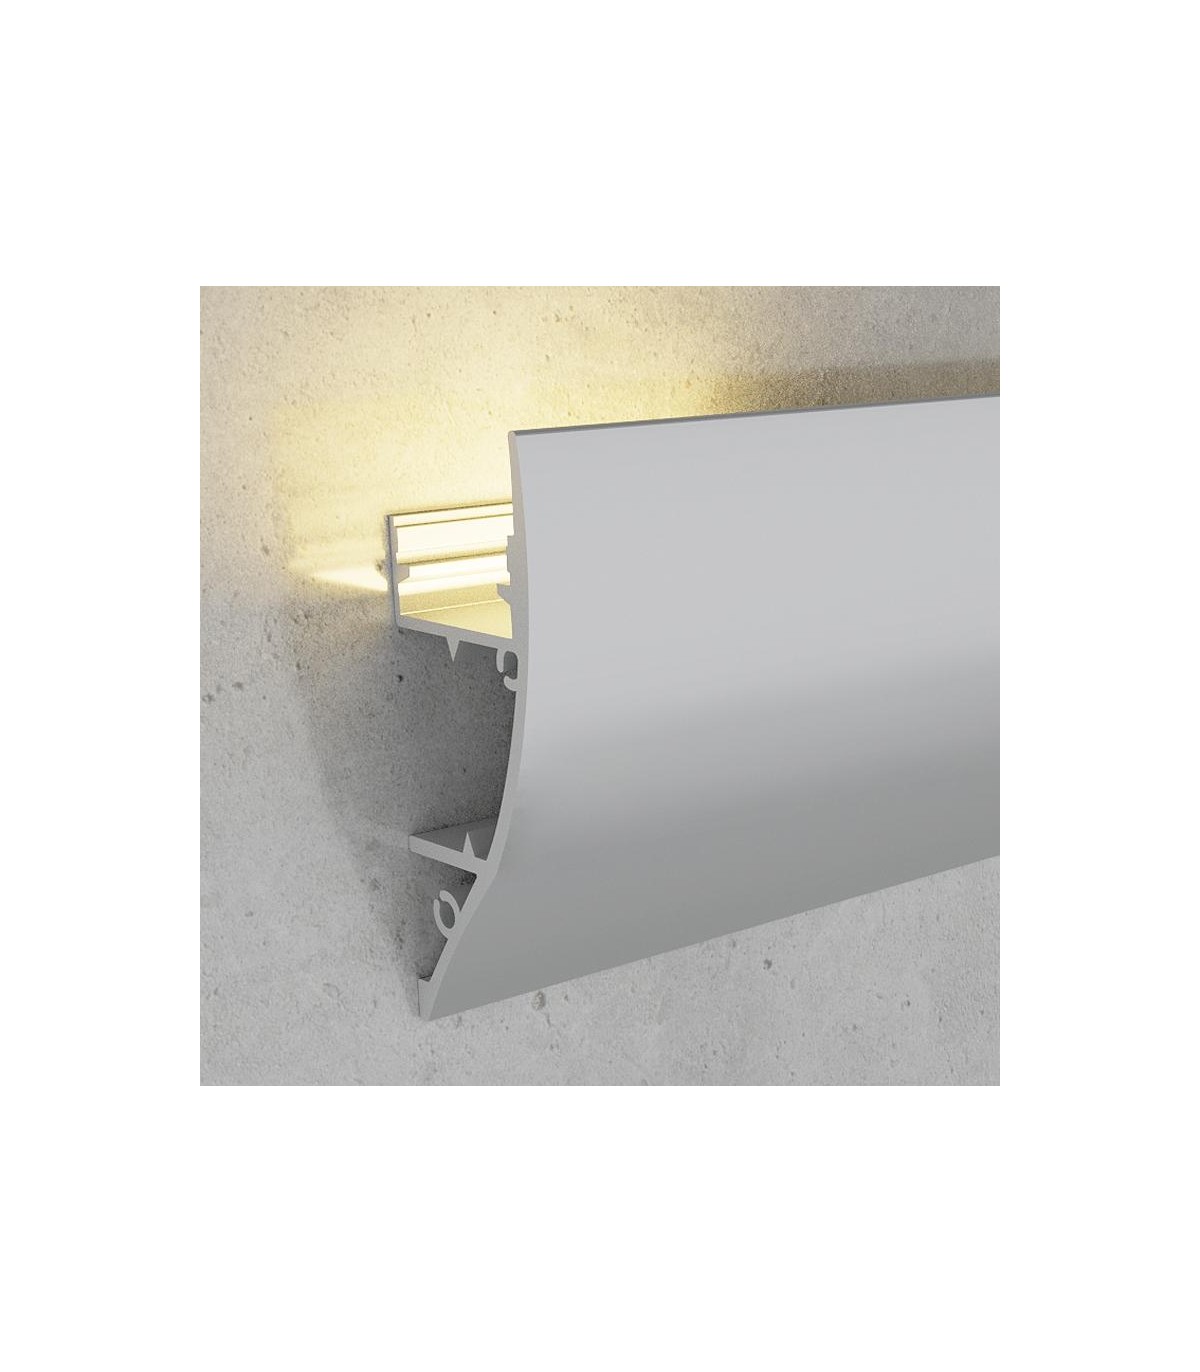 Perfil de Aluminio Modelo CORNISA 17x43mm para tira LED - 2 Metros